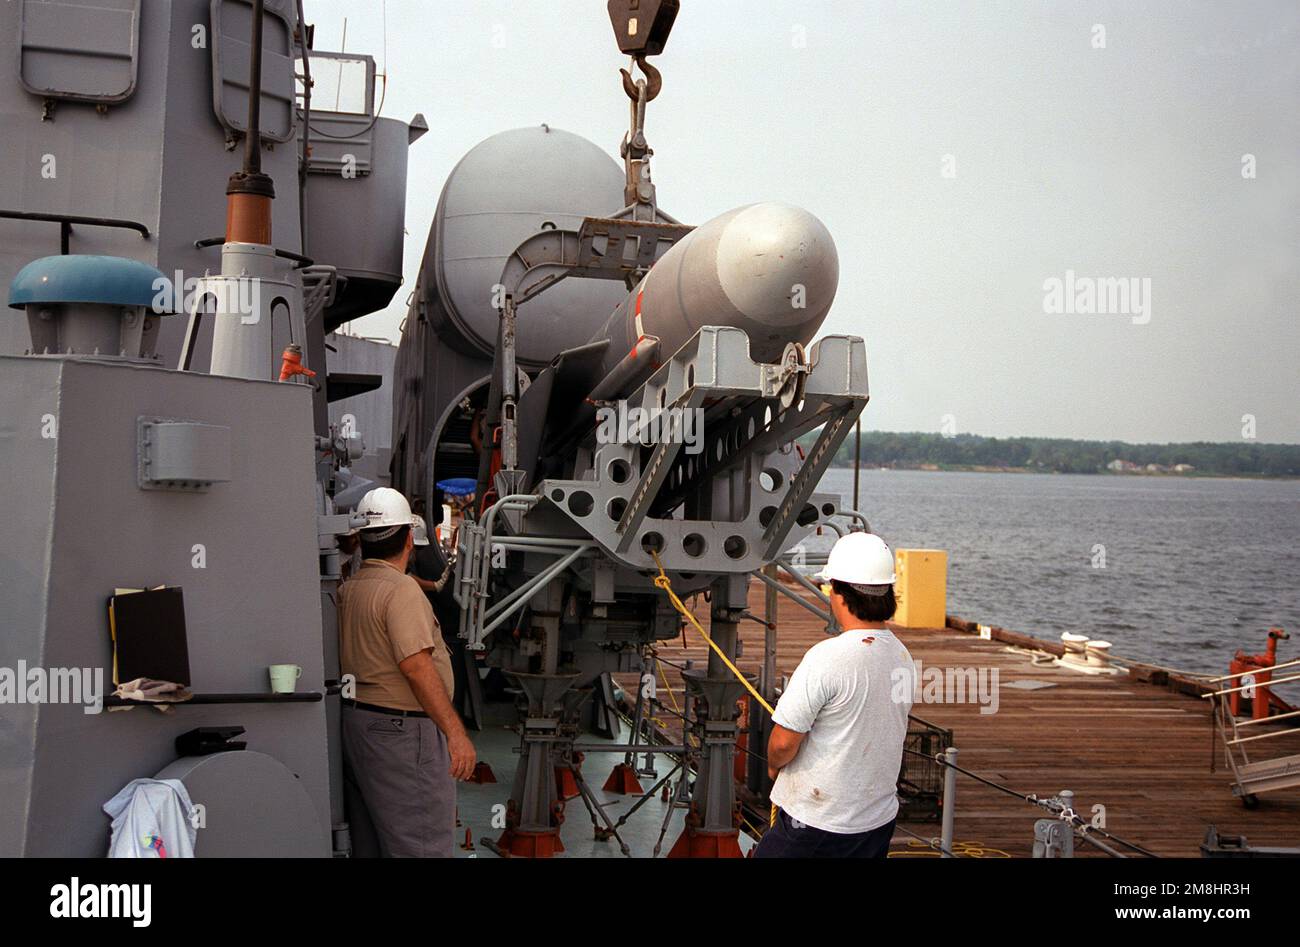 Ein P-15 SS-N-2c Styx SSM wird aus dem Raketenrohr Nr. 4 an Bord des USNS HIDDENSEE (185NS9201) entladen, während das Schiff in der Naval Sea Systems Command-Einrichtung im Solomons Annex vor Anker liegt. Die sowjetisch gebaute Tarantul-Raketencorvette der Klasse I wurde im November 1991 von der deutschen Bundesflotte erworben und wird derzeit von den USA getestet und bewertet Die Marine. Das Schiff wurde nach der Wiedervereinigung Deutschlands im Jahr 1990 in "HIDDENSEE" umbenannt, als es zur ostdeutschen Marine gehörte. Land: Salomonen Stockfoto